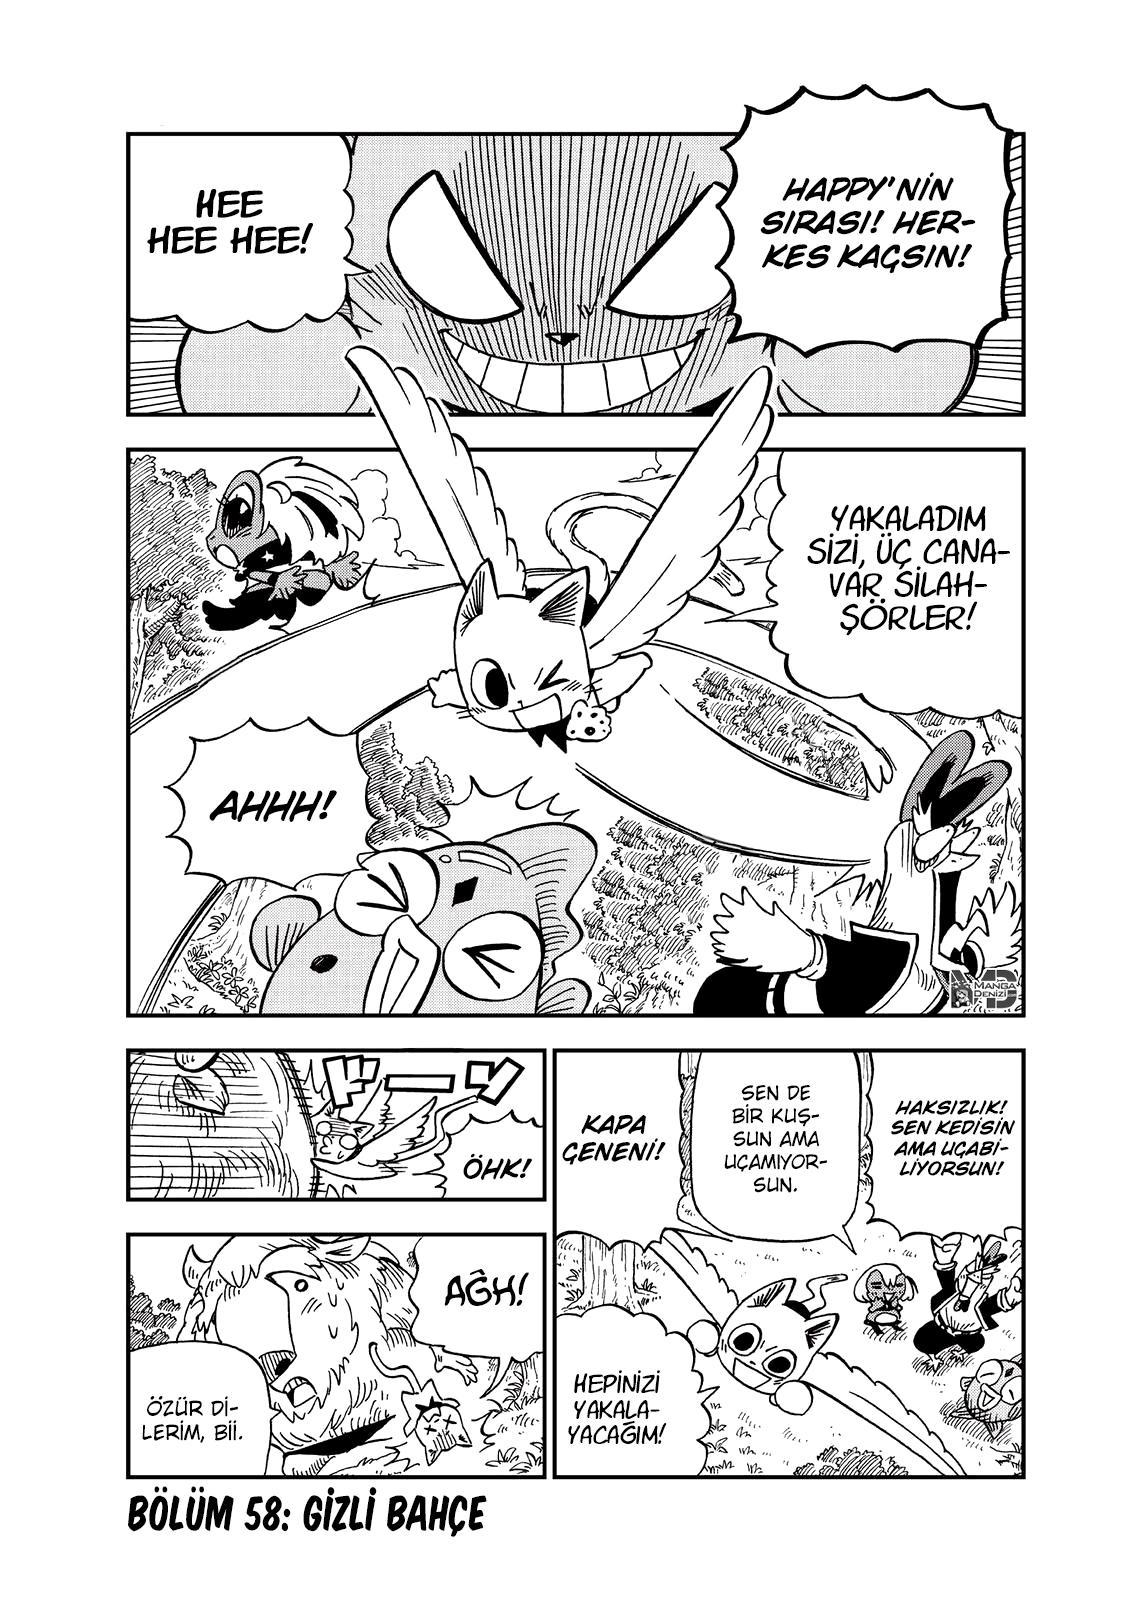 Fairy Tail: Happy's Great Adventure mangasının 58 bölümünün 2. sayfasını okuyorsunuz.